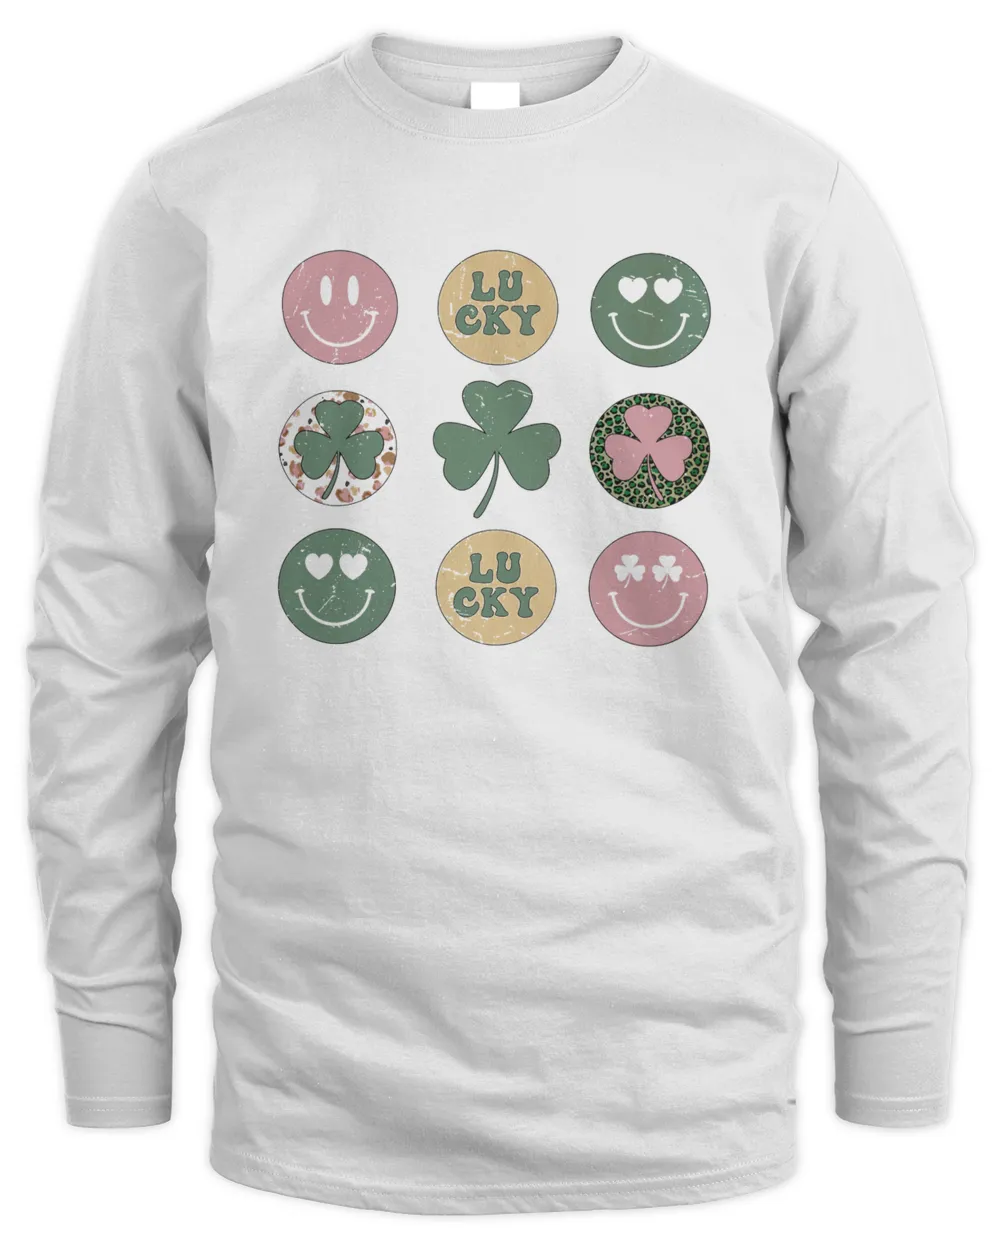 Hearts Retro Groovy St. Patricks Day T-shirt_679